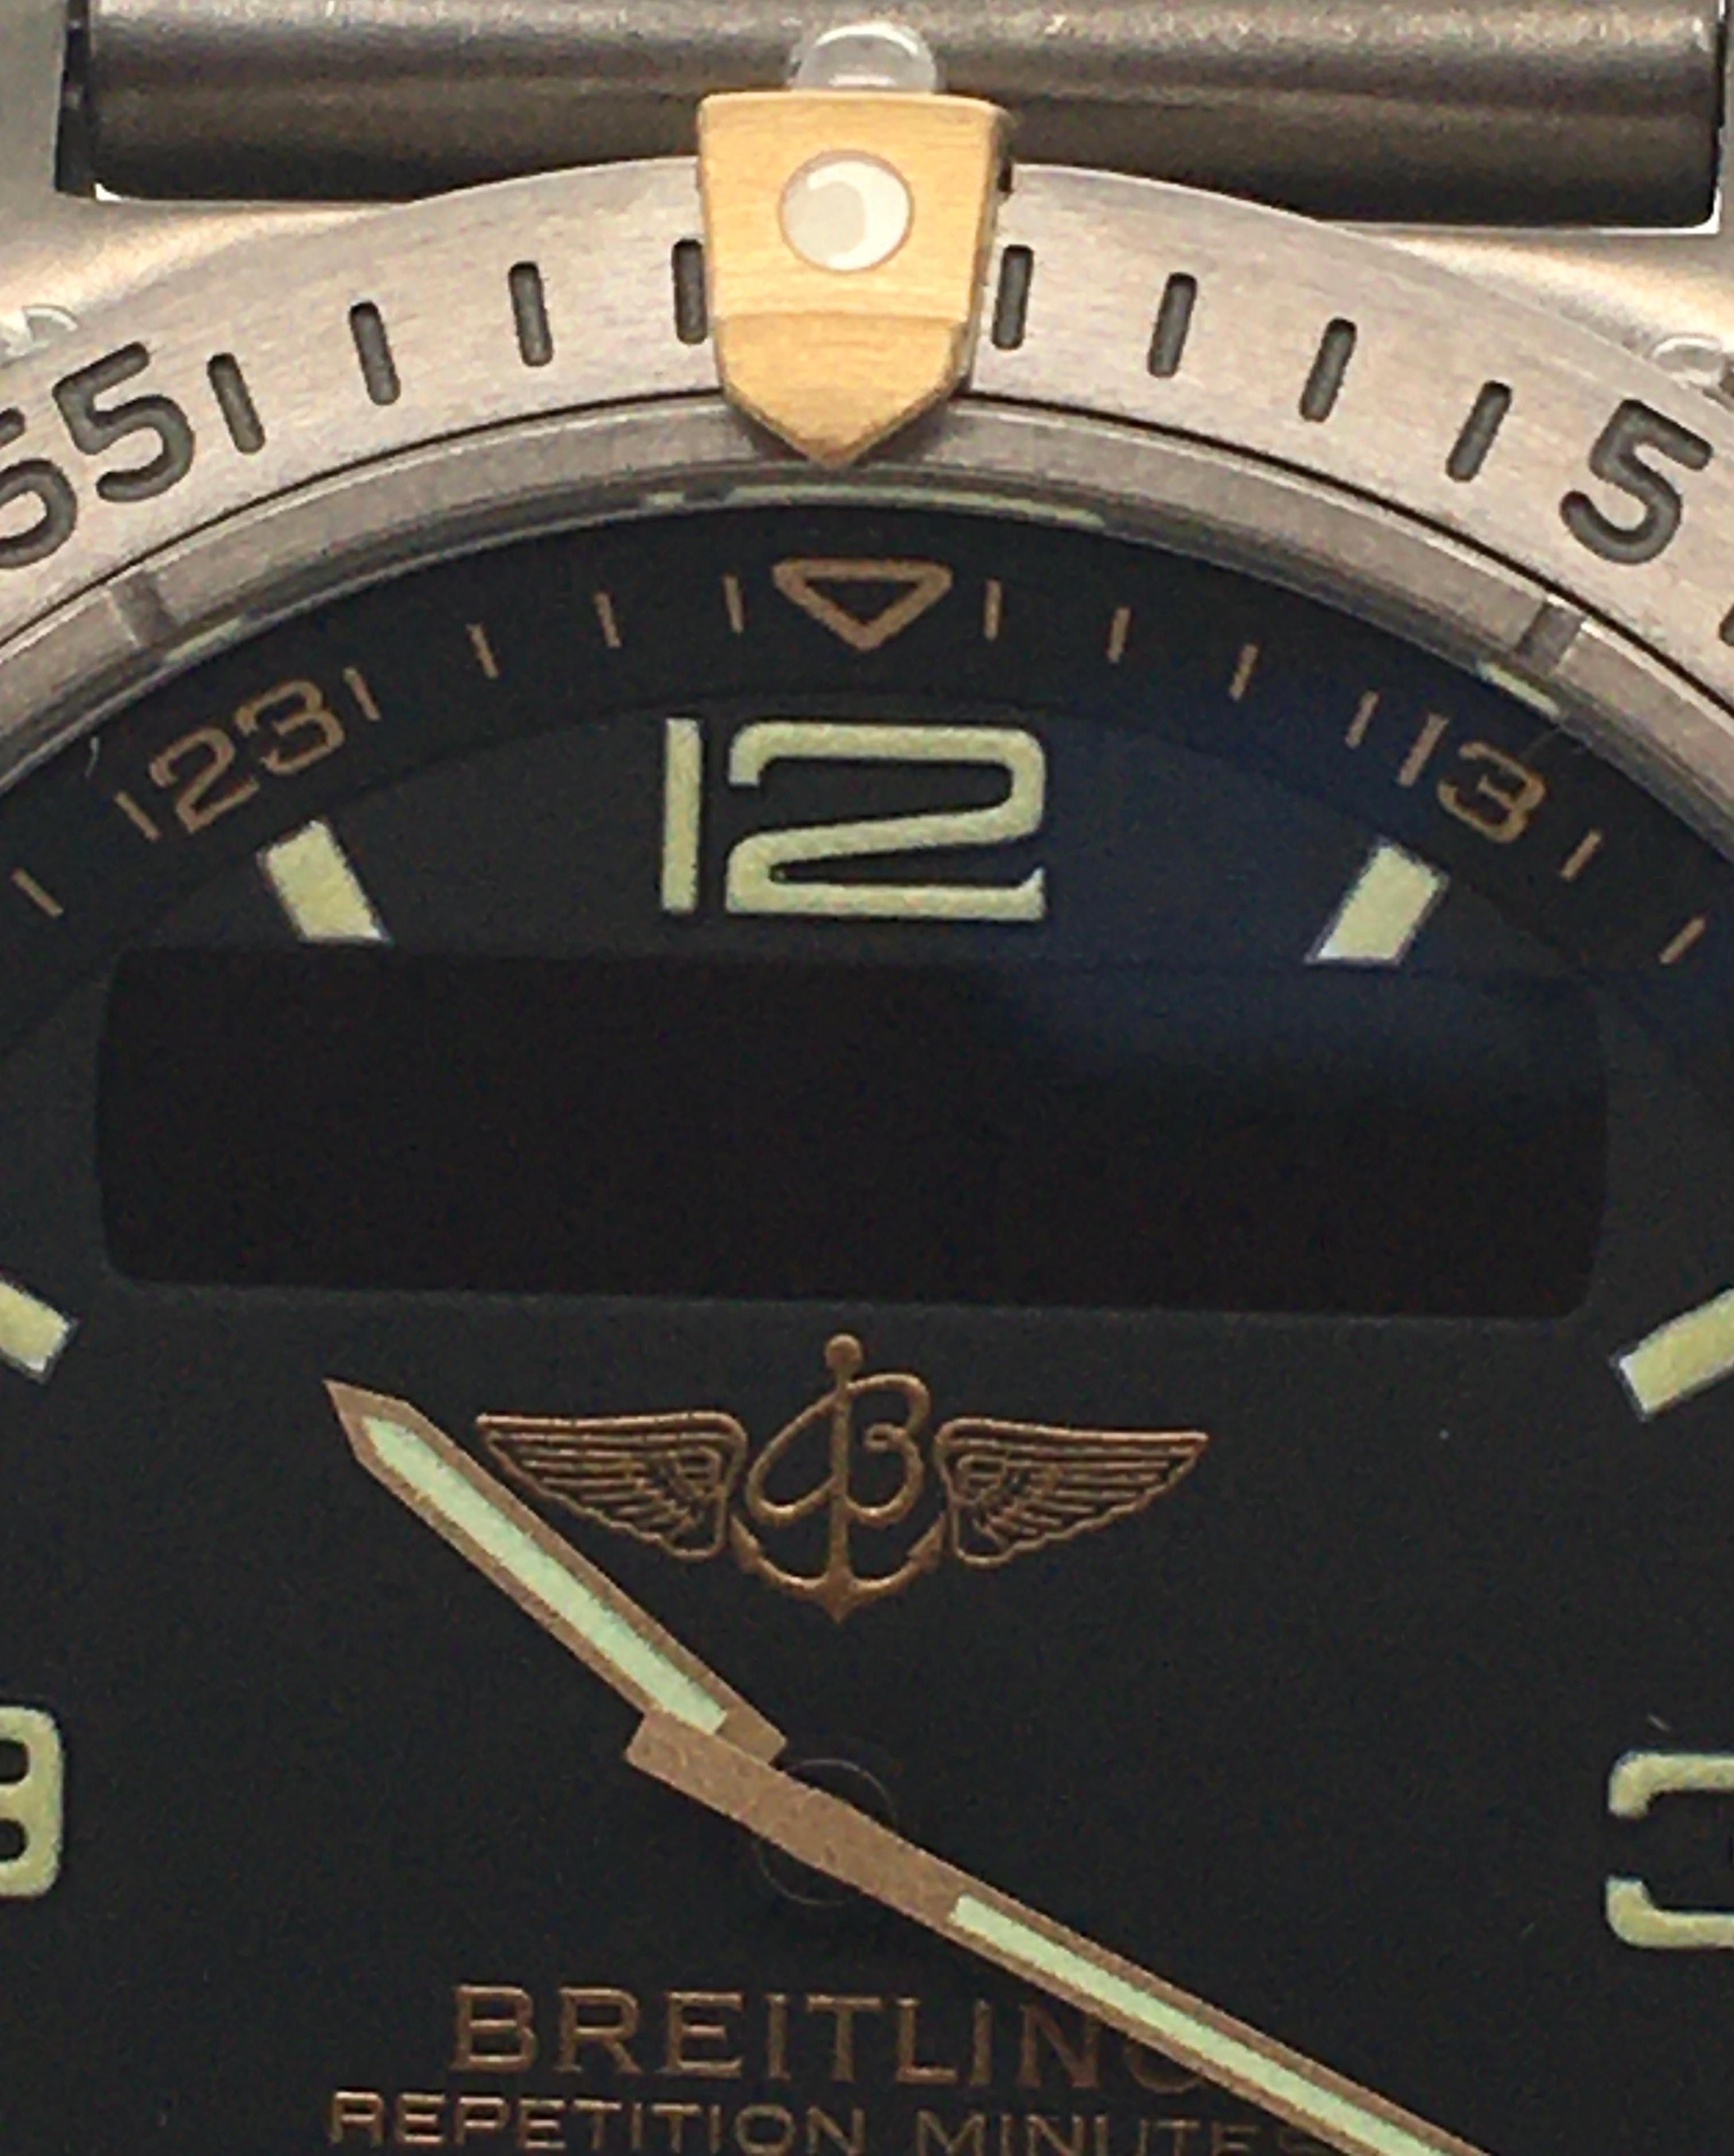 Breitling Aerospace 100m Titanium Case & Bracelet W/ Black Dial Chronograph  For Sale 2